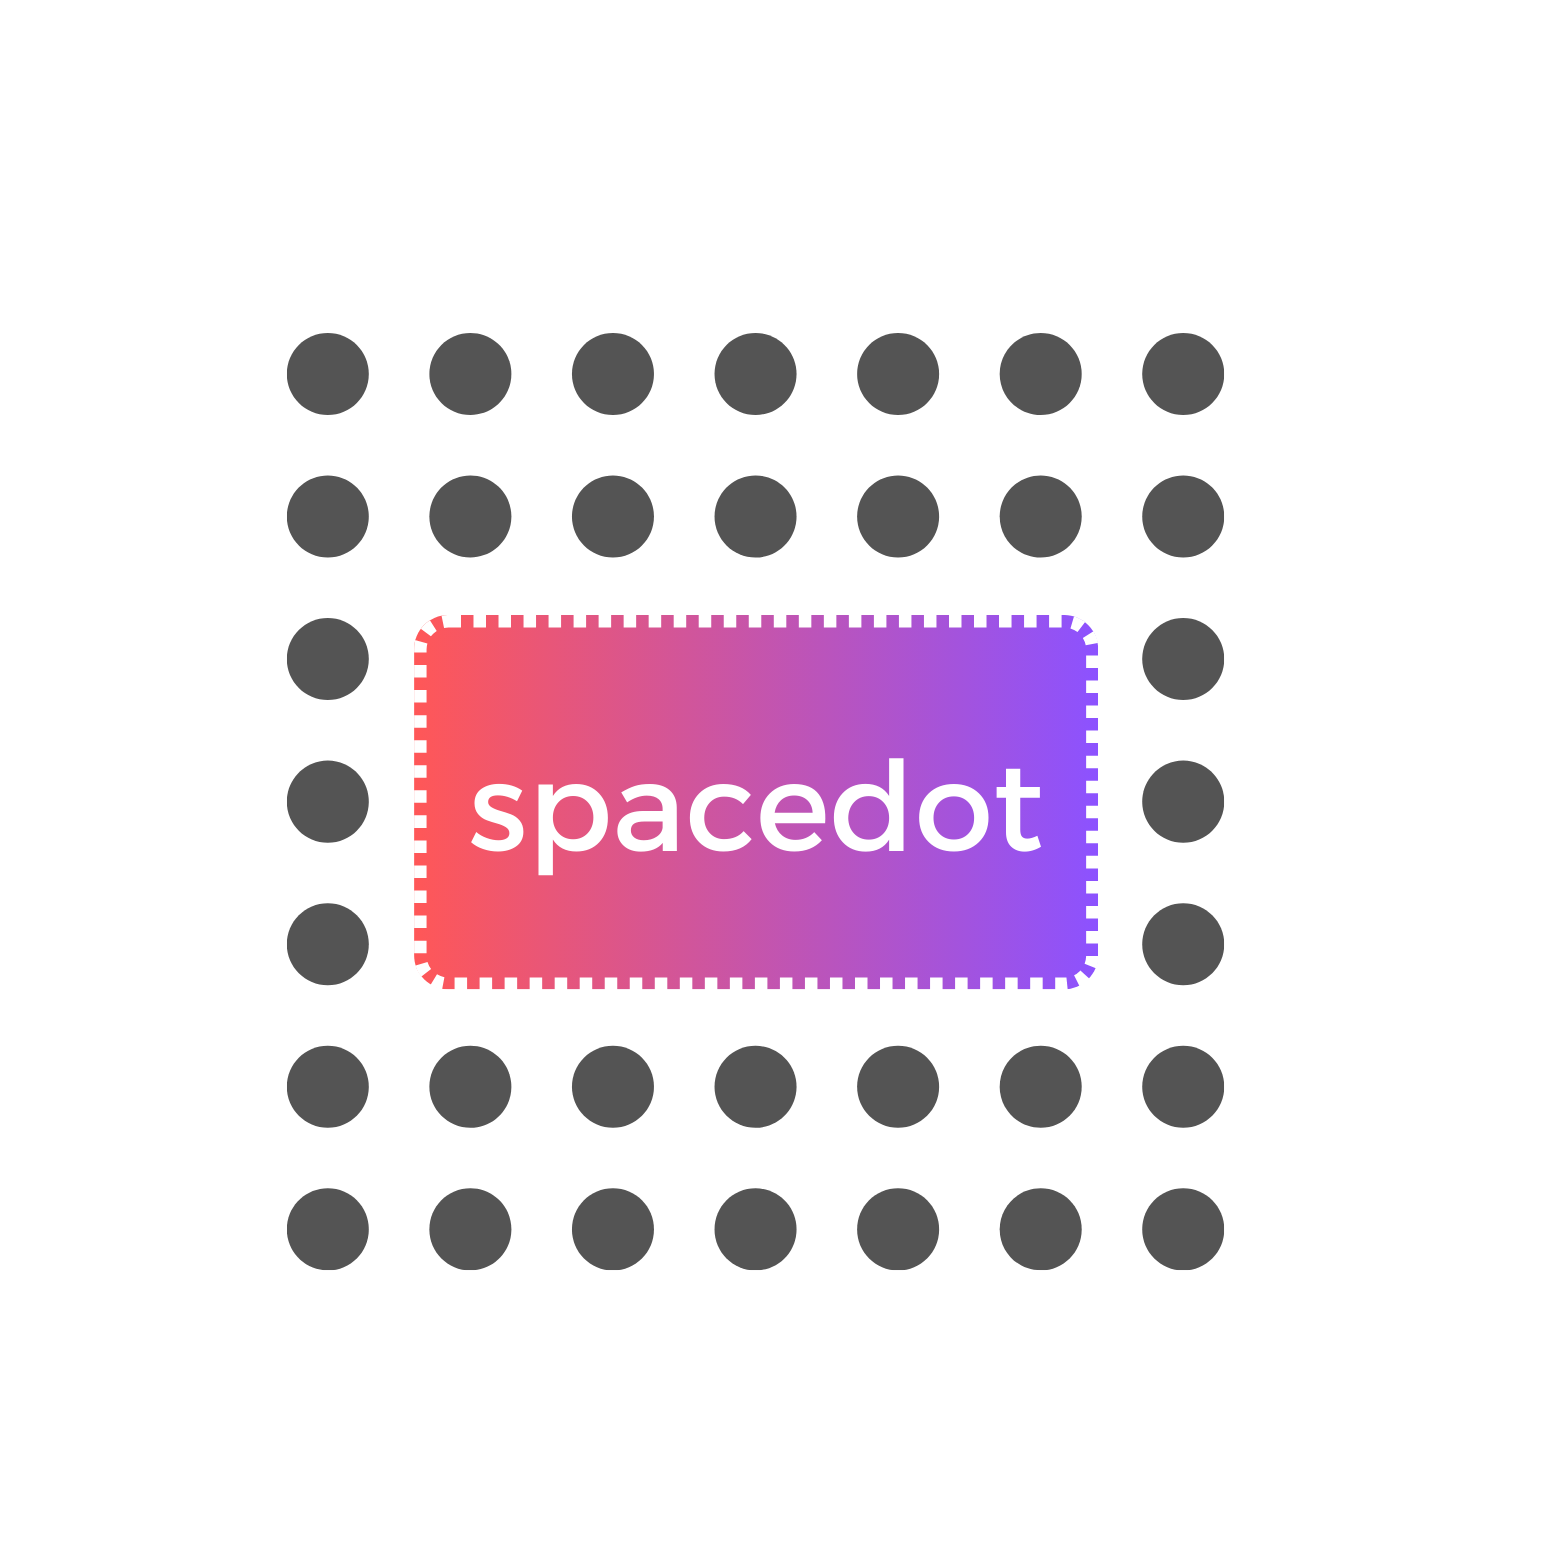 spacedot